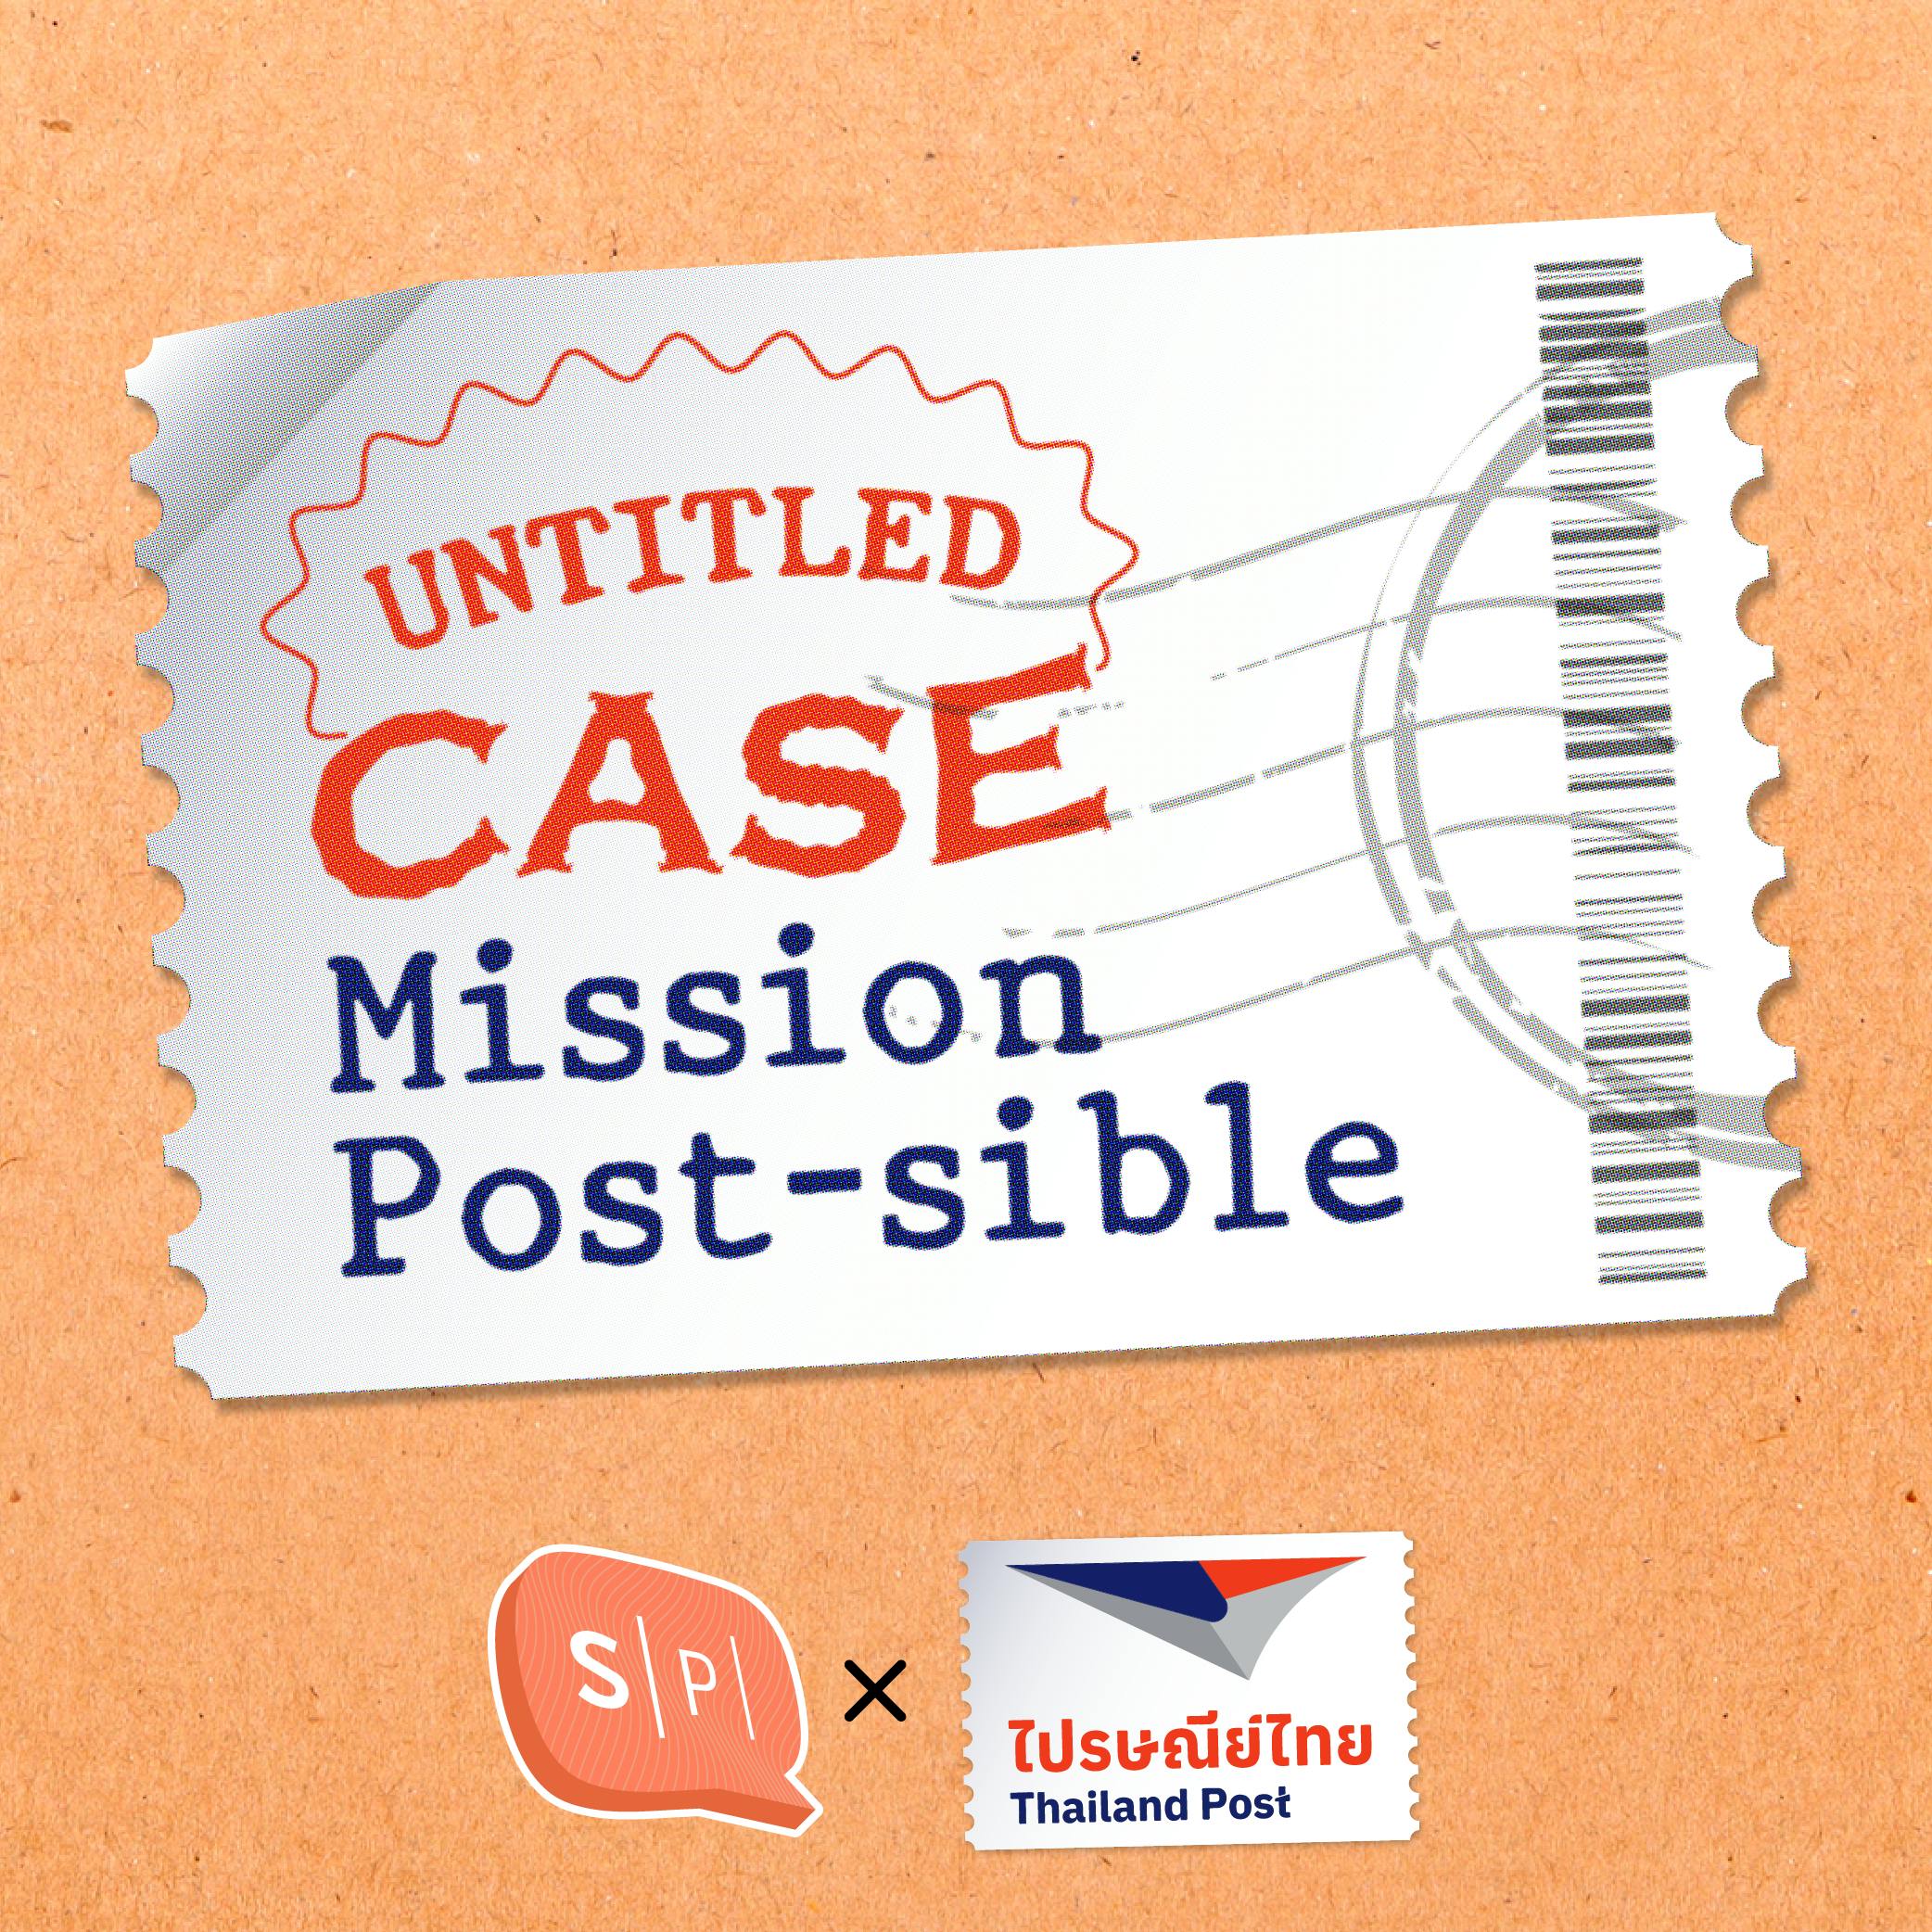 ยชธัญ ใน Untitled Case Mission Post-sible กับภารกิจบอกเล่าพลังการส่ง “เปลี่ยนโลก”